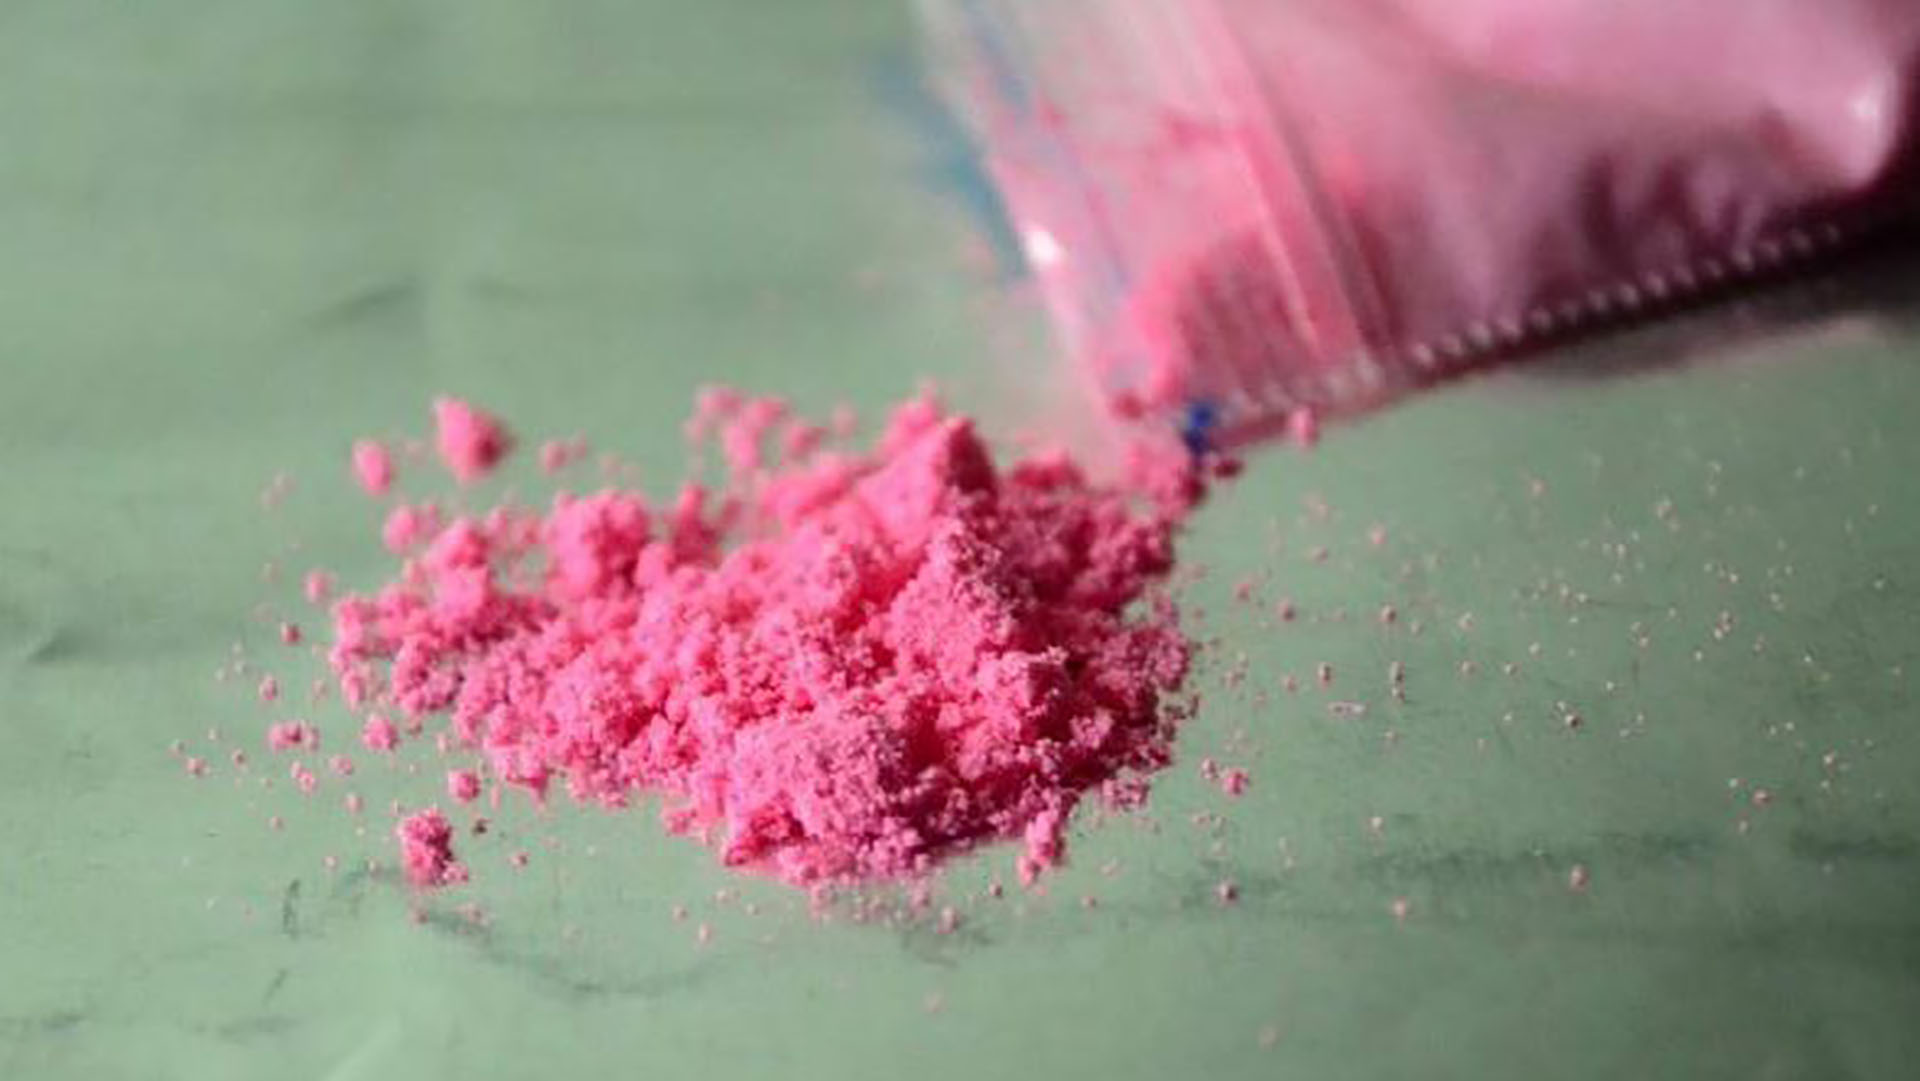 Tusi o Cocaína Rosa, otra de las drogas peligrosas que es elegida a veces por lo jóvenes